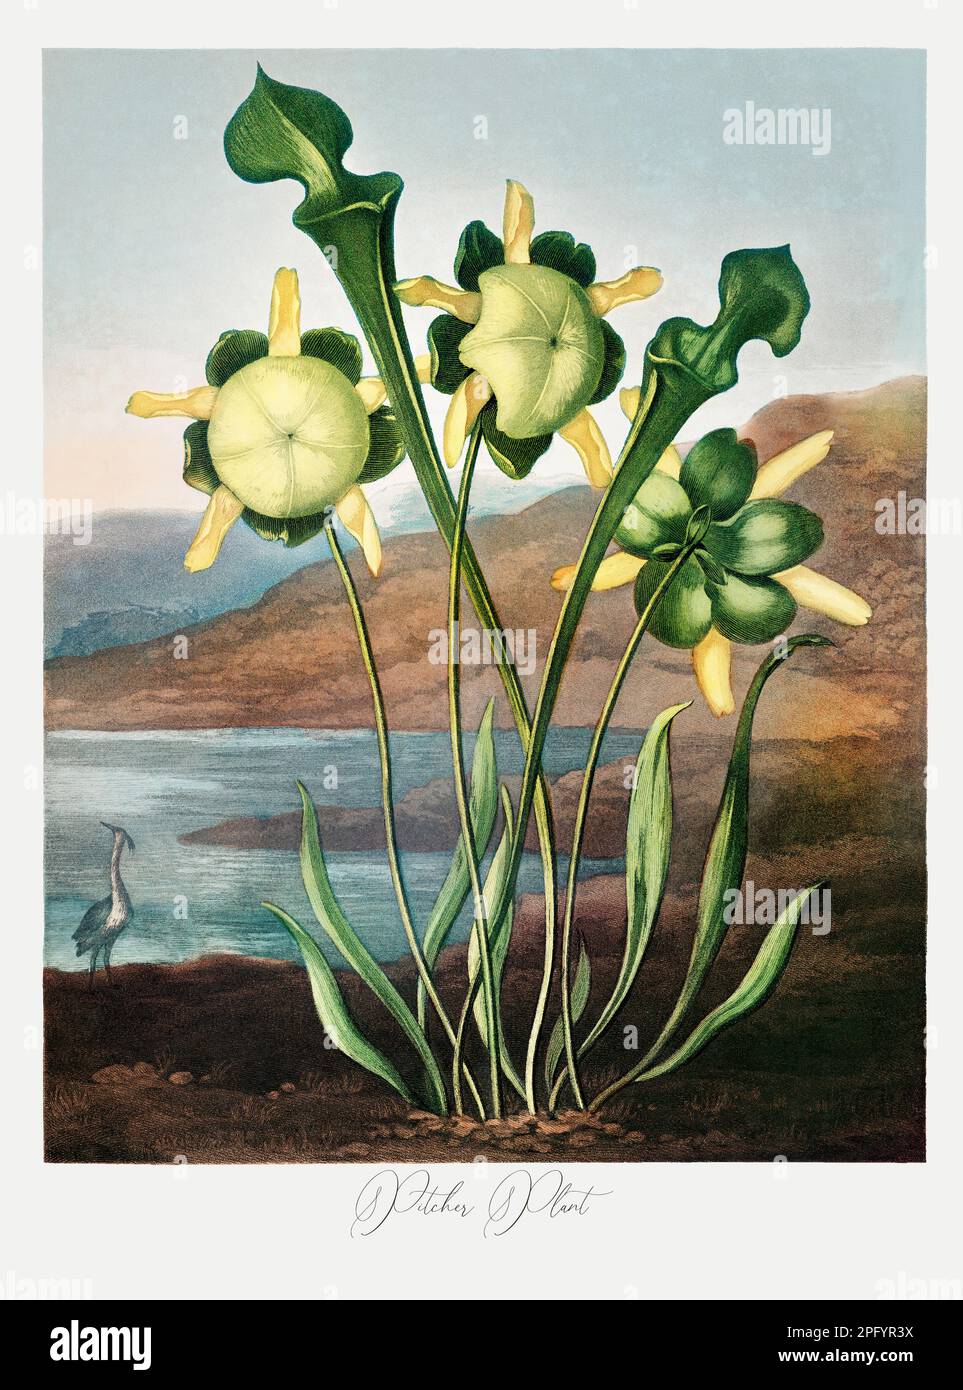 Usine de pichet. Peinture antique de fleurs victoriennes. Illustration du livre 'le Temple de Flora' de Robert Thornton (1807) Banque D'Images